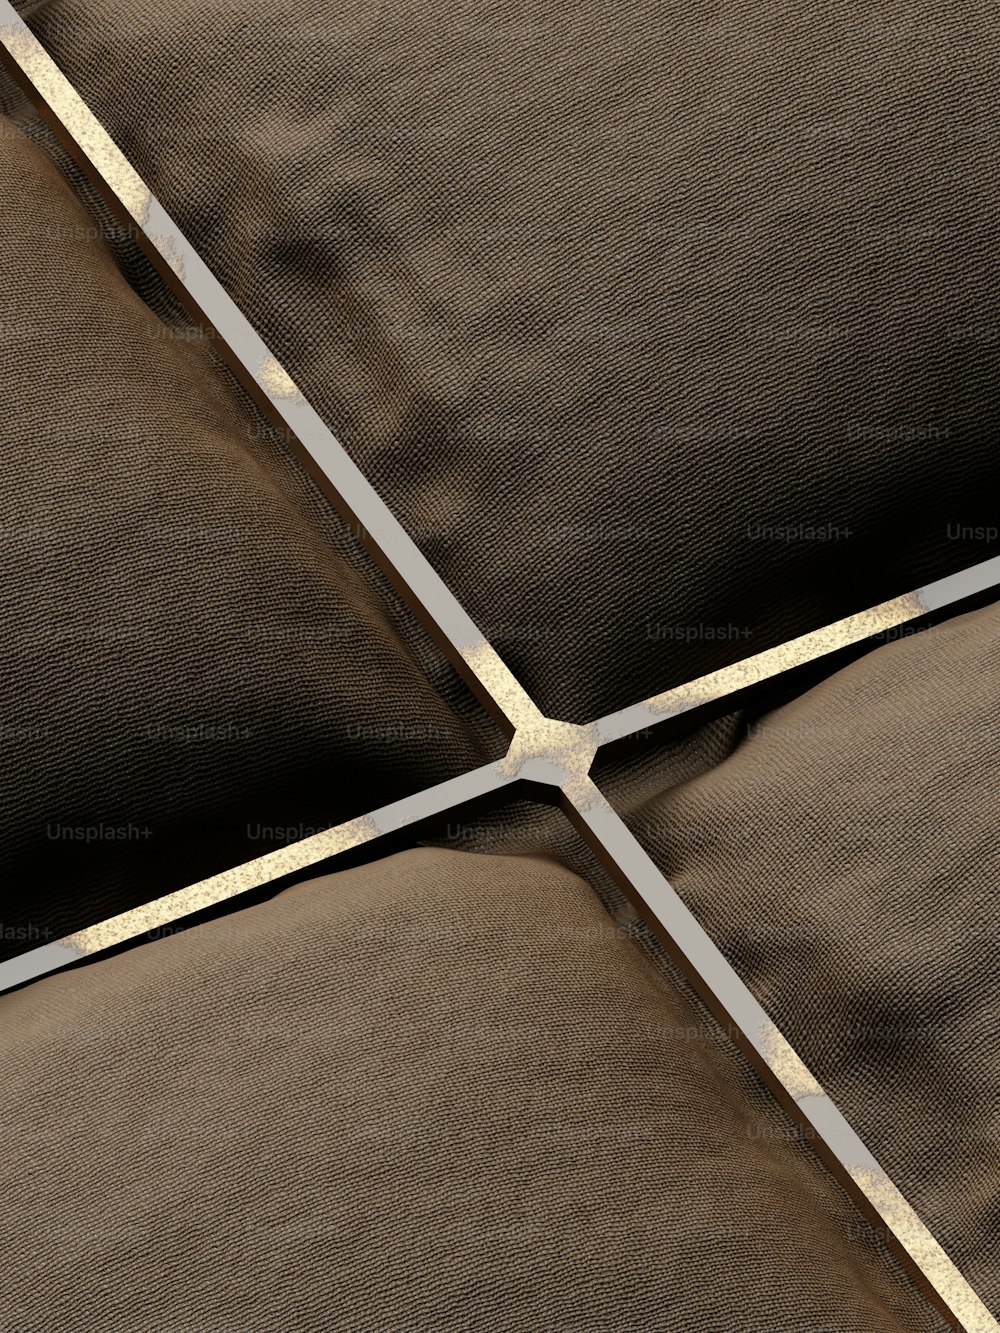 um close up de um travesseiro marrom e branco